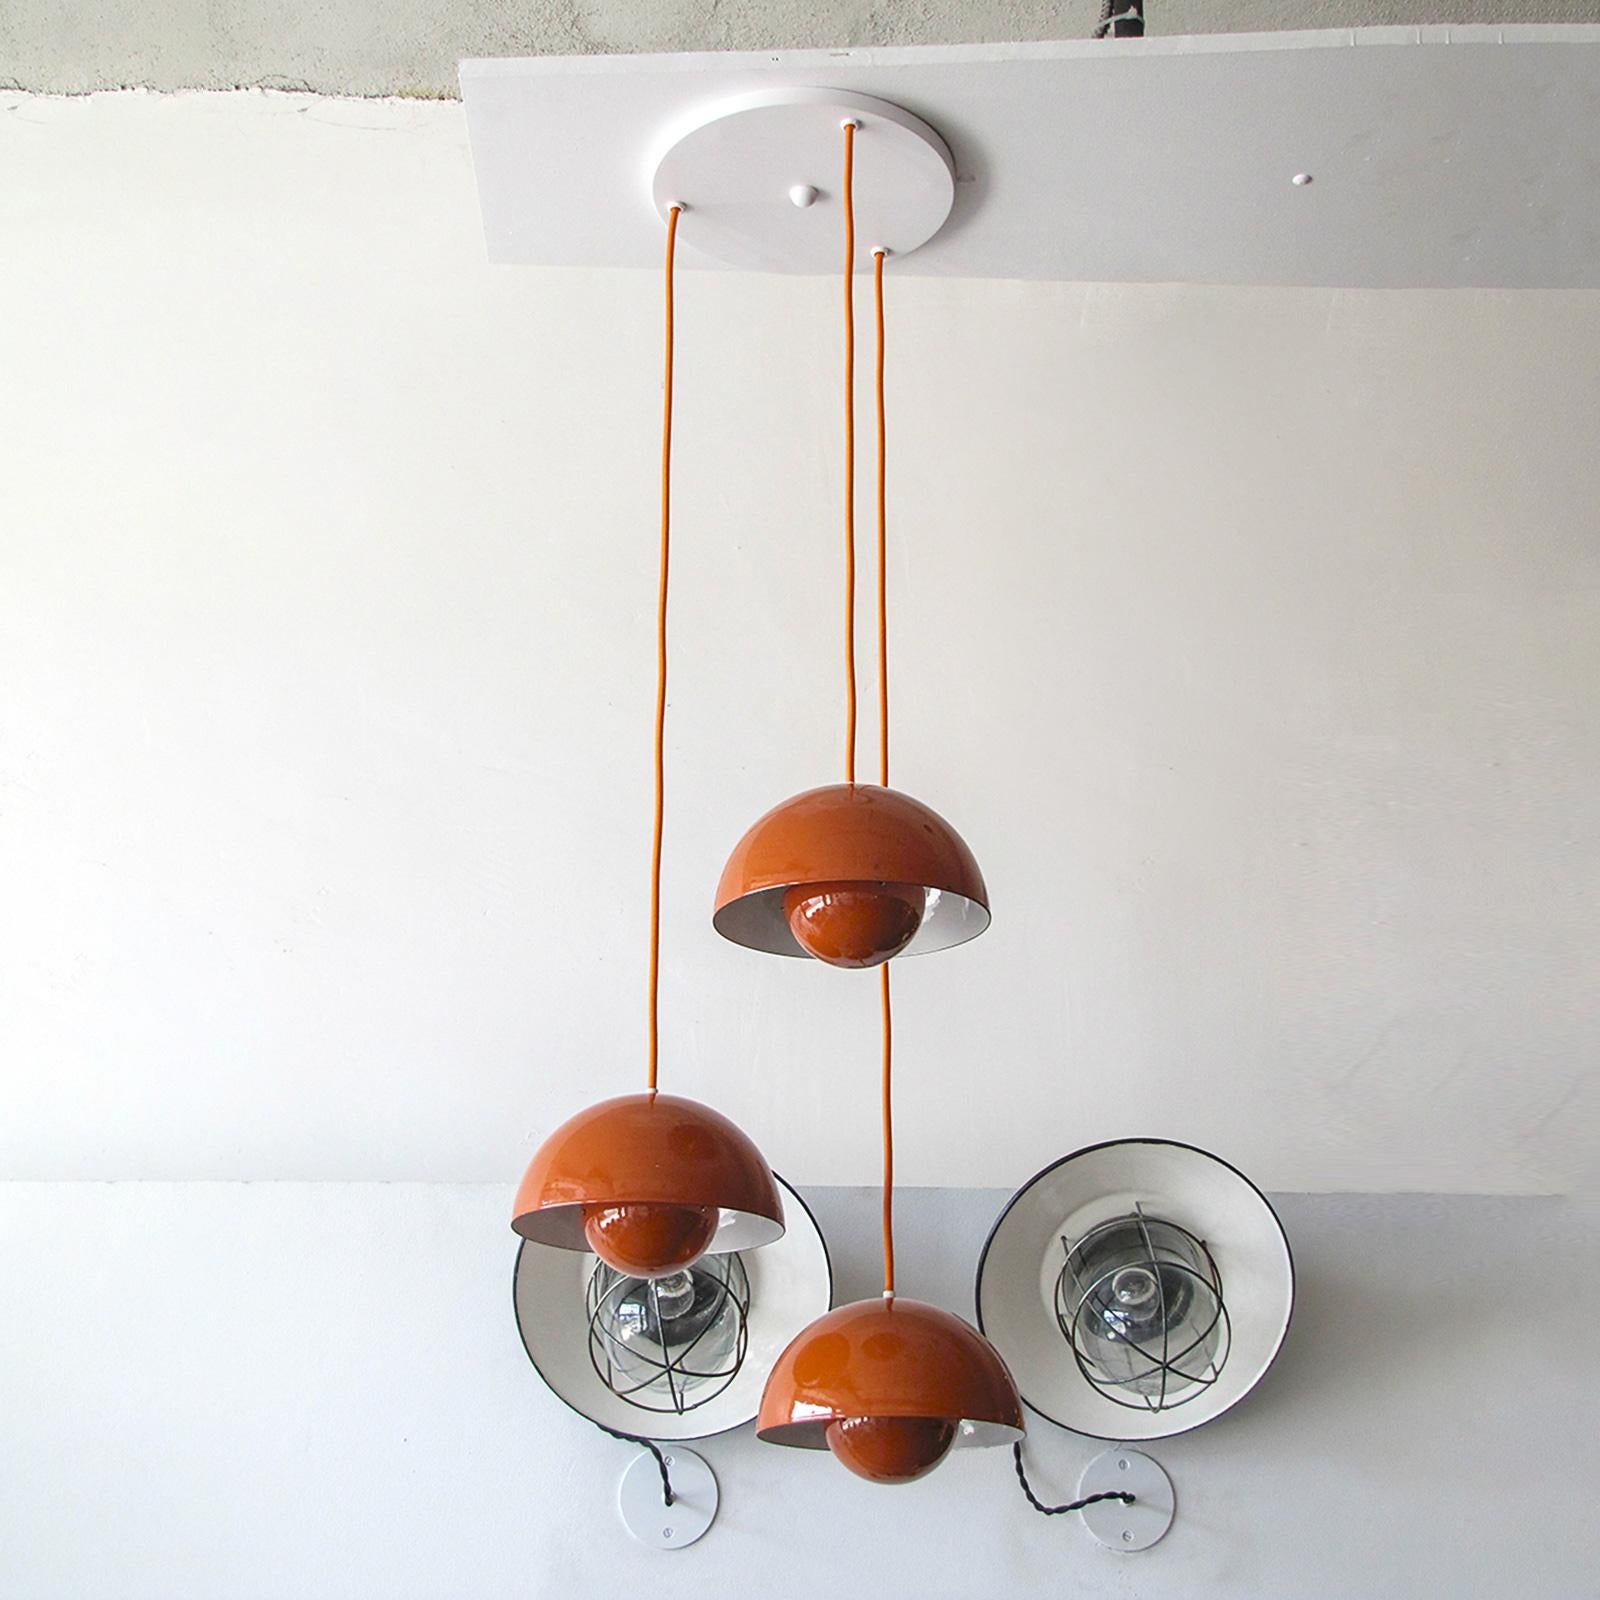 Magnifique suspension en forme de pot de fleurs des années 1970 par Verner Panton pour Louis Poulsen, trois pièces émaillées orange avec des cordons de couleur assortie sur une seule canopée, l'intérieur des sphères réfléchissantes est orange, les